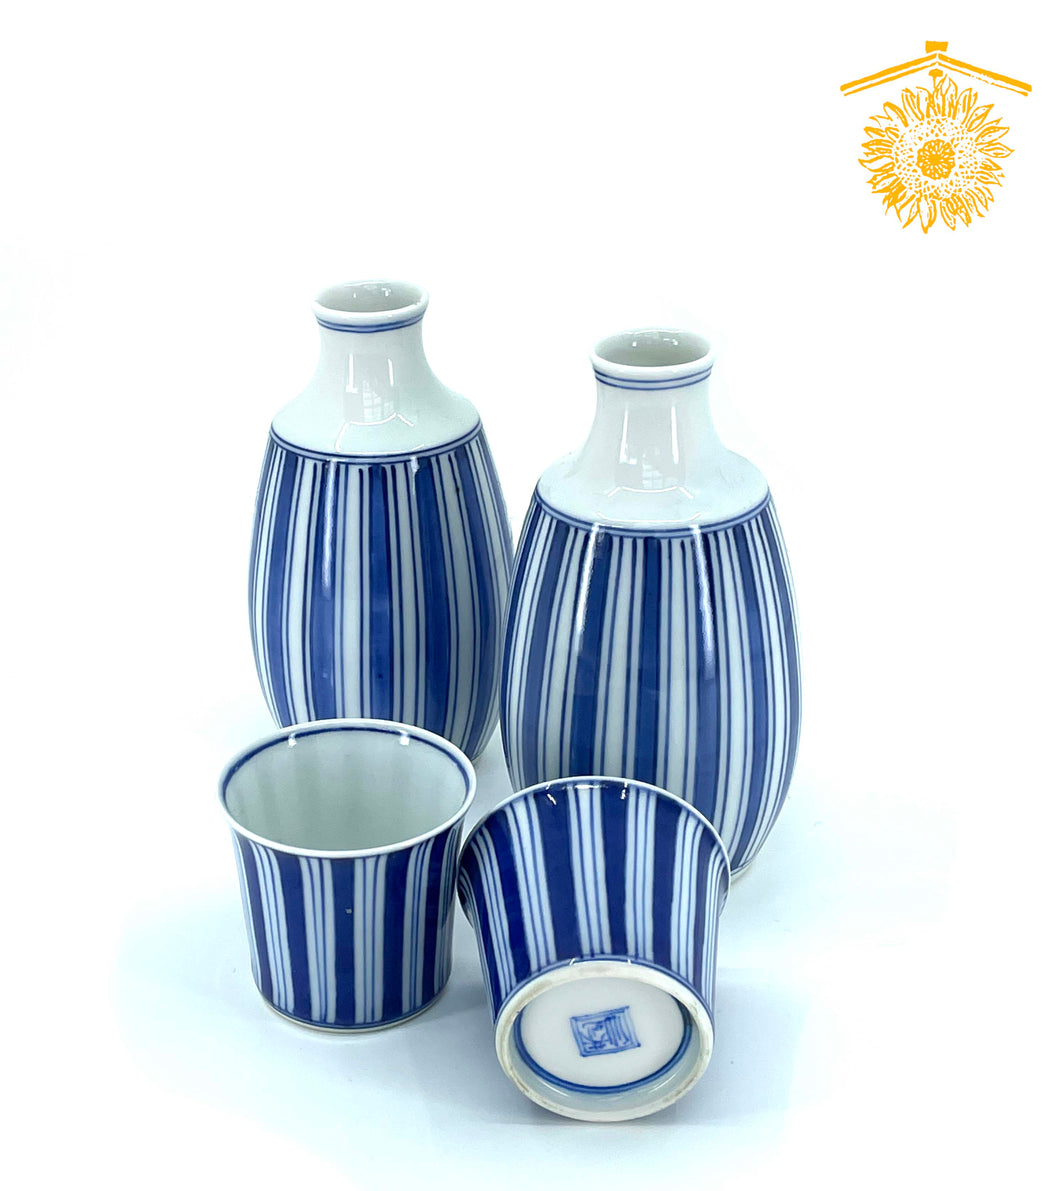 Hasami-ware striped celadon blue sake set: 1 tokkuri, 1 cup (2 available)